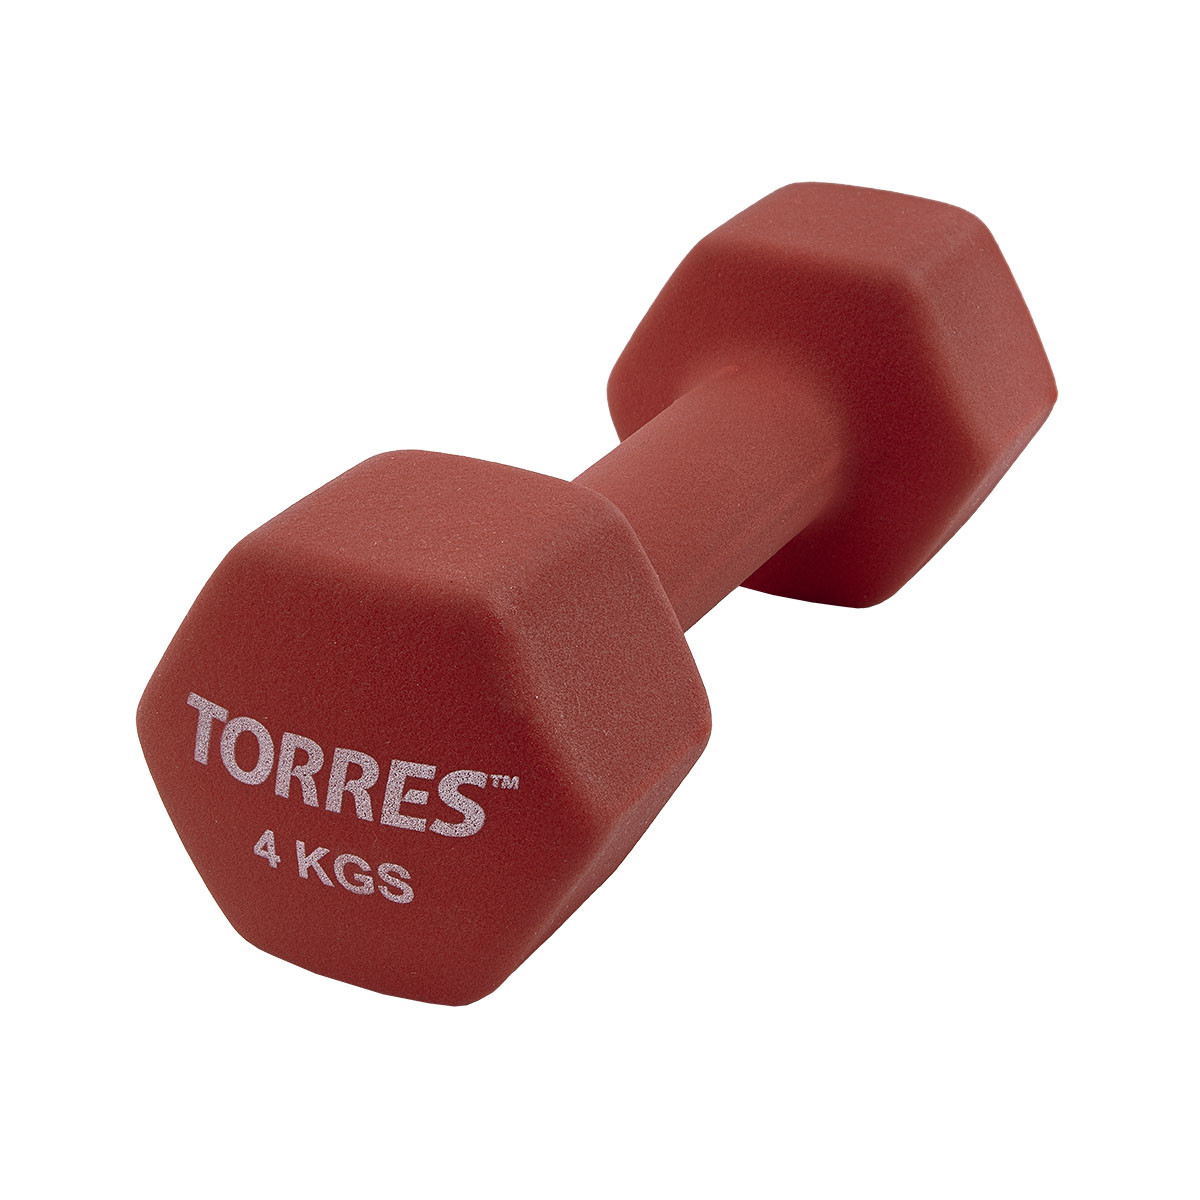  Torres 4  PL55014